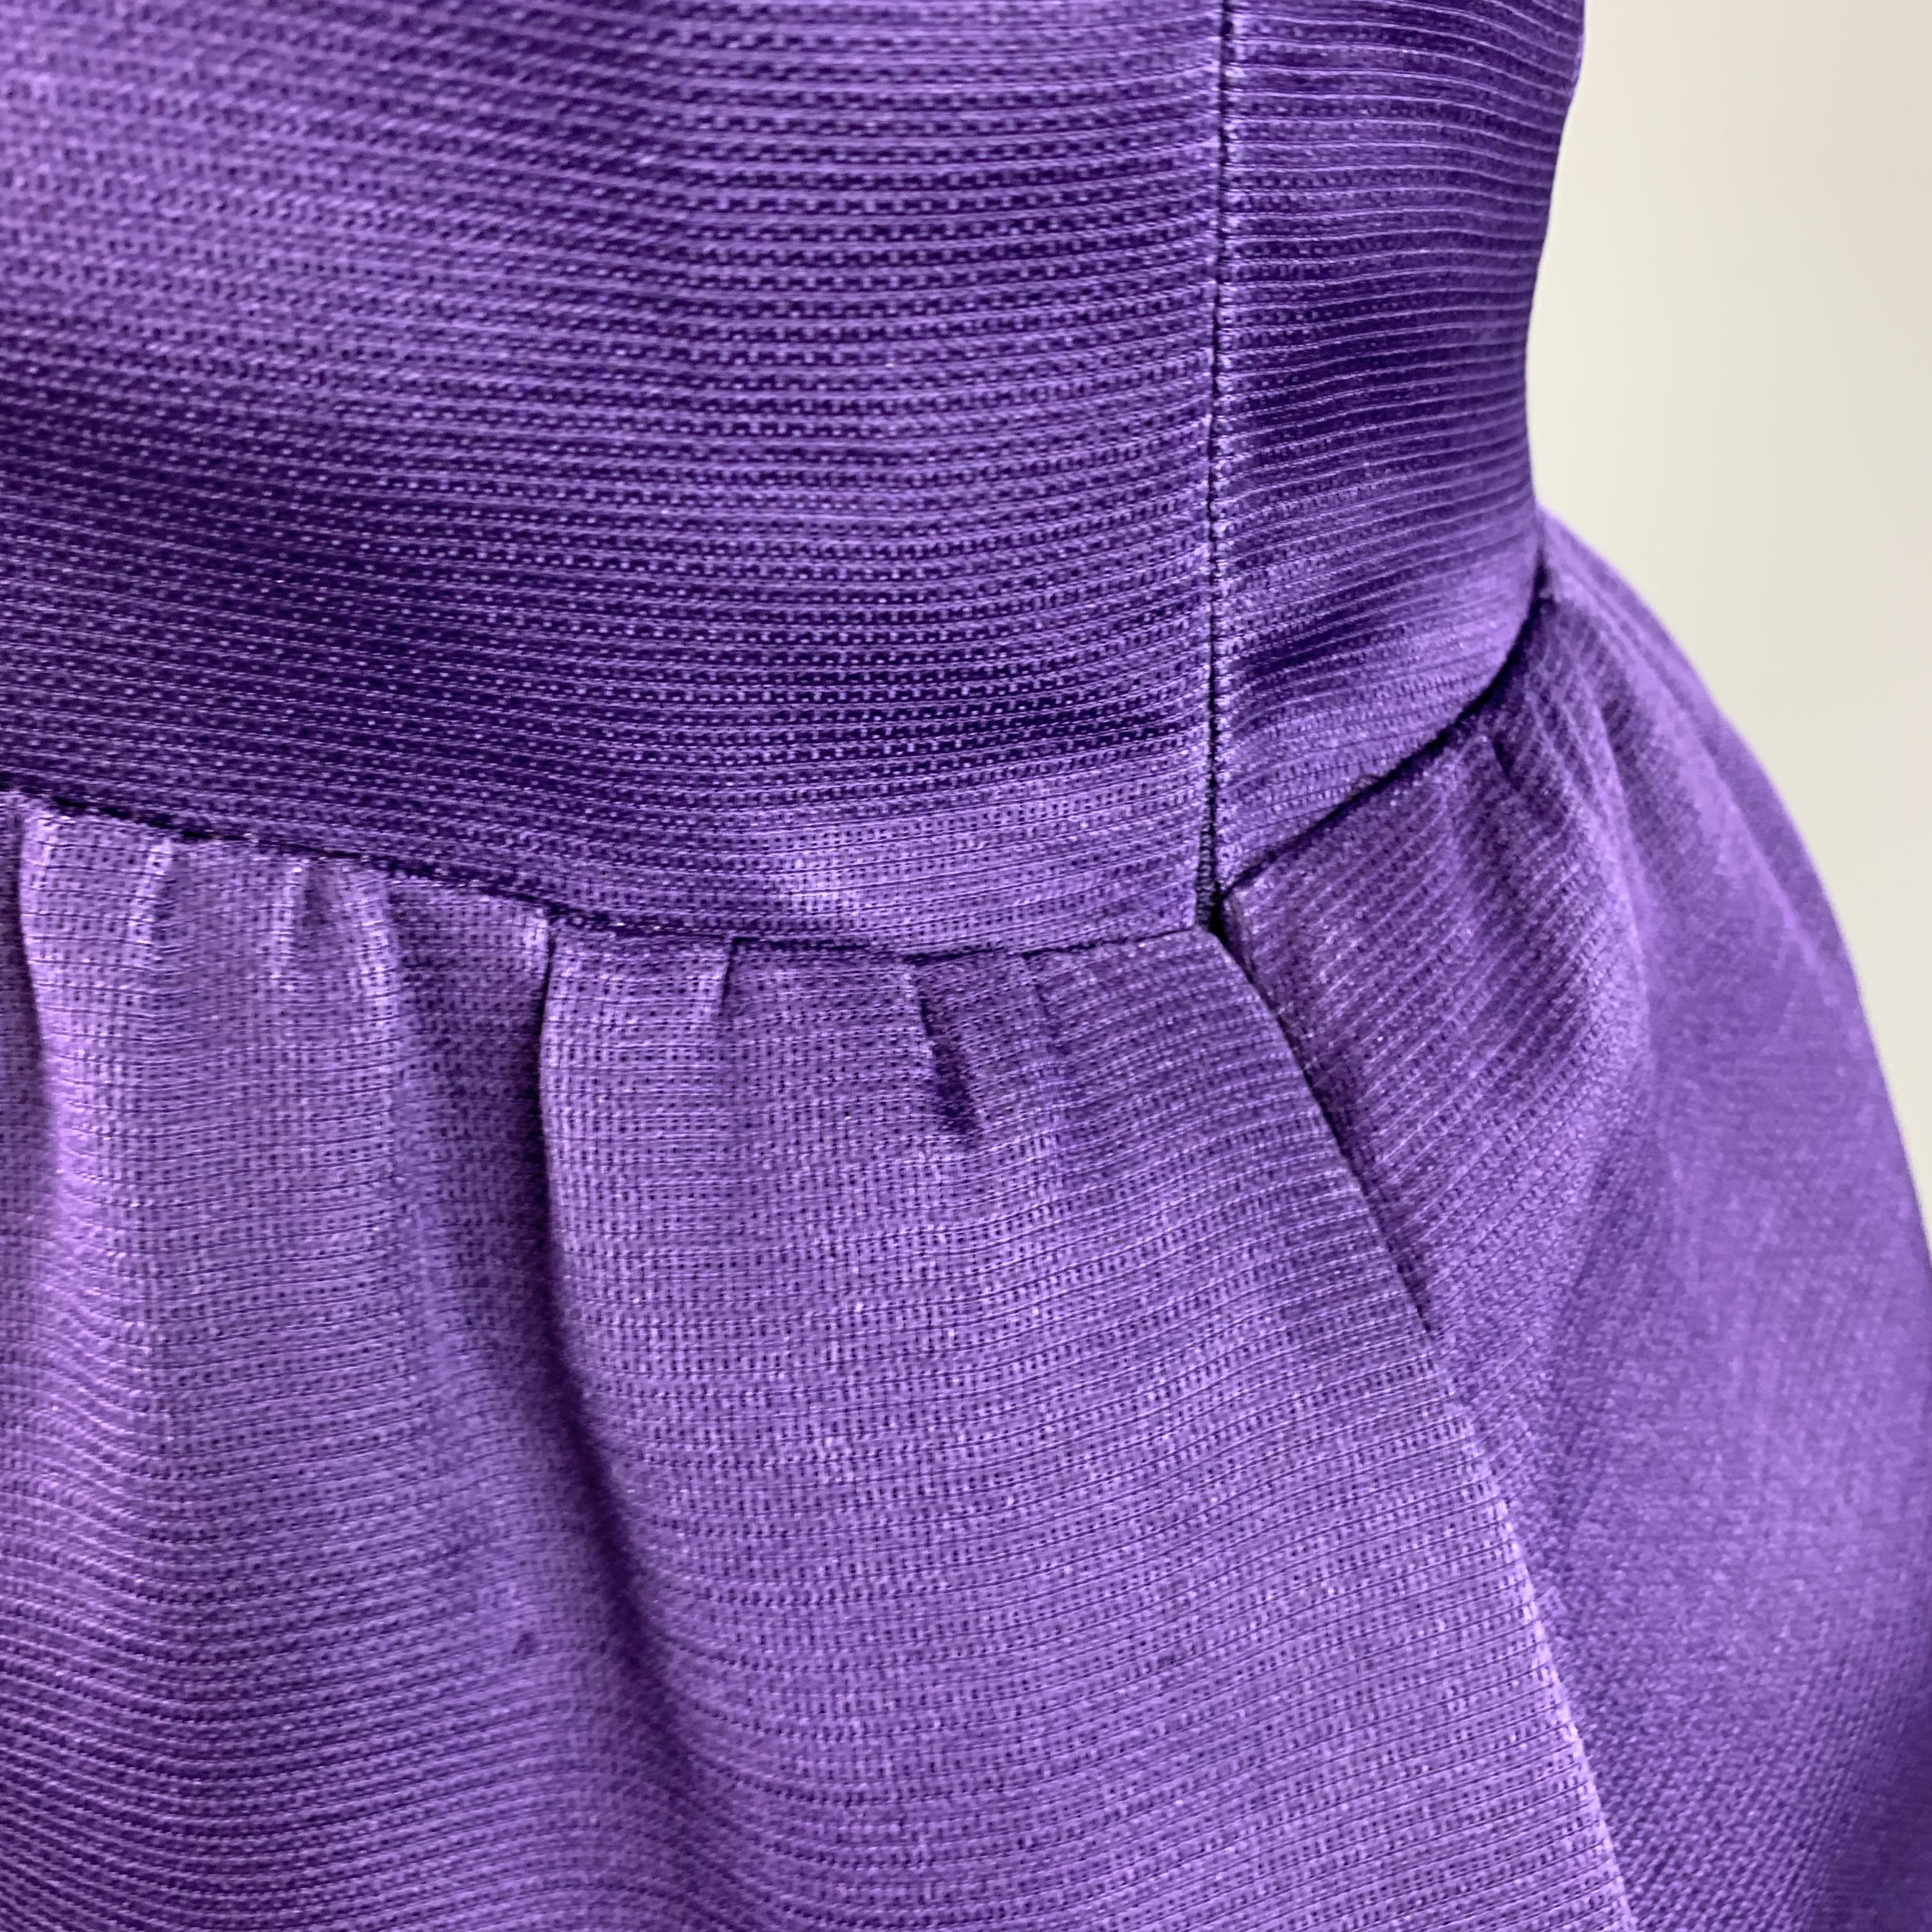 Men's BALENCIAGA Size 6 Purple Silk Sleeveless Ruffle Skirt Sheath Cocktail Dress